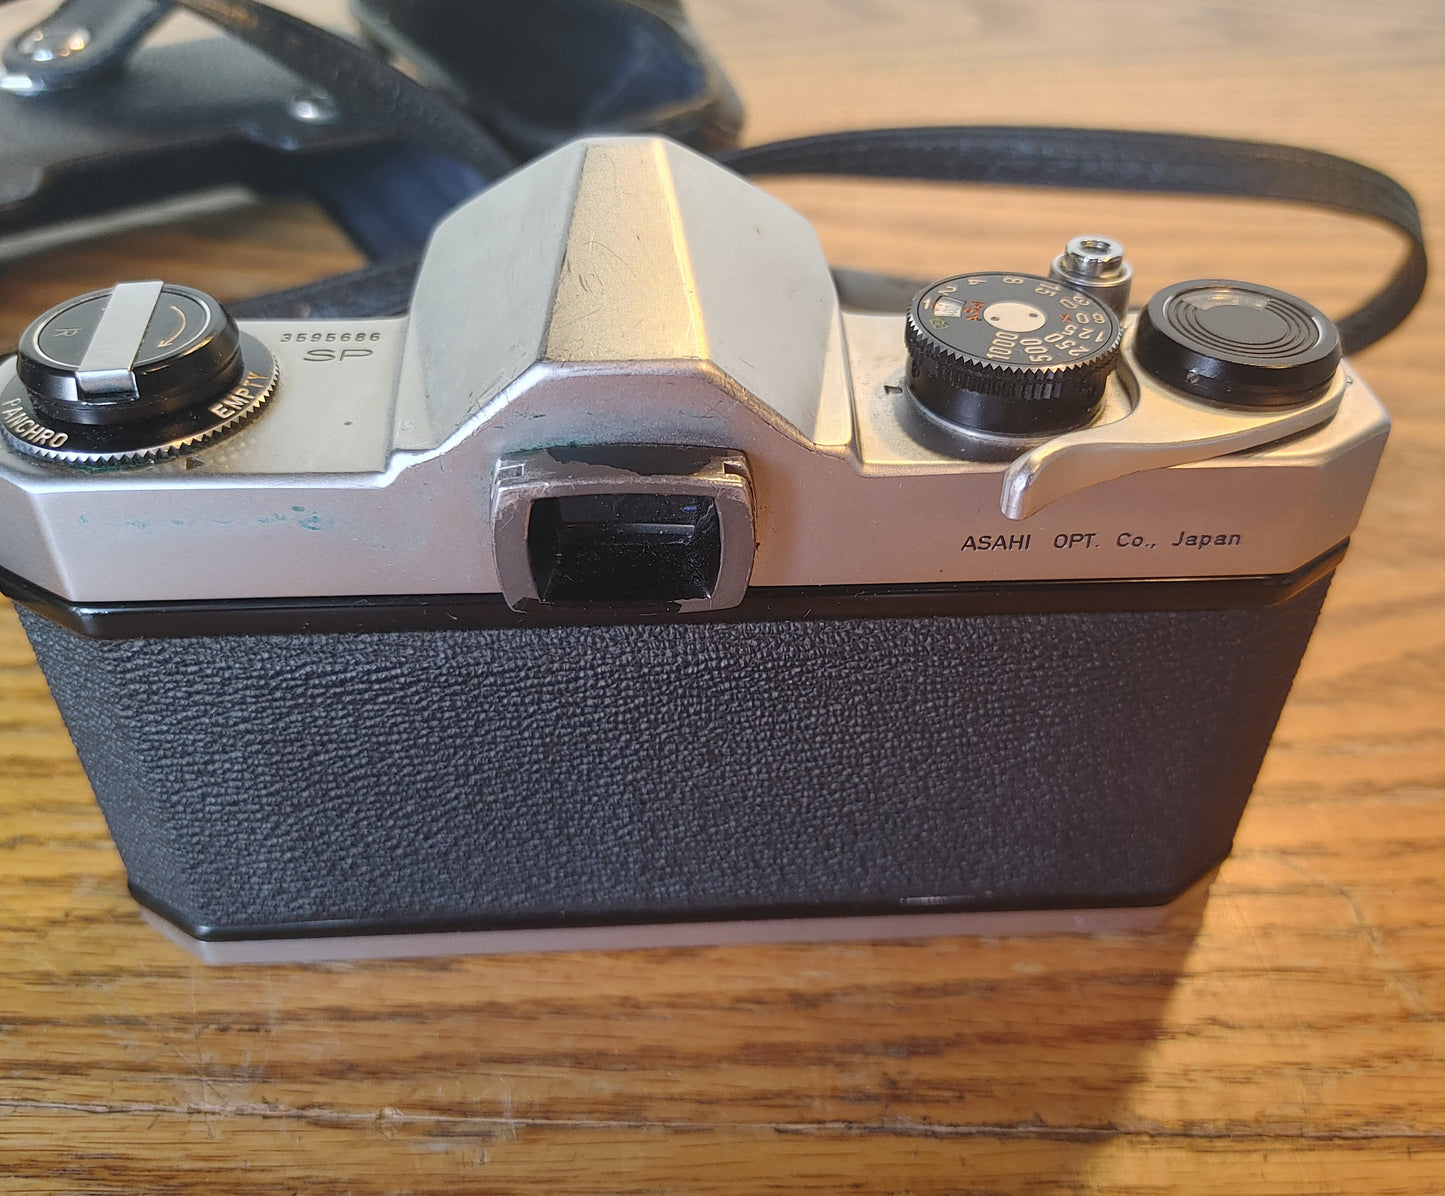 Asahi (NOT Beer)! Vintage Pentax Spotmatic 35mm Camera 1:1.4/50mm Lens Takumar Case